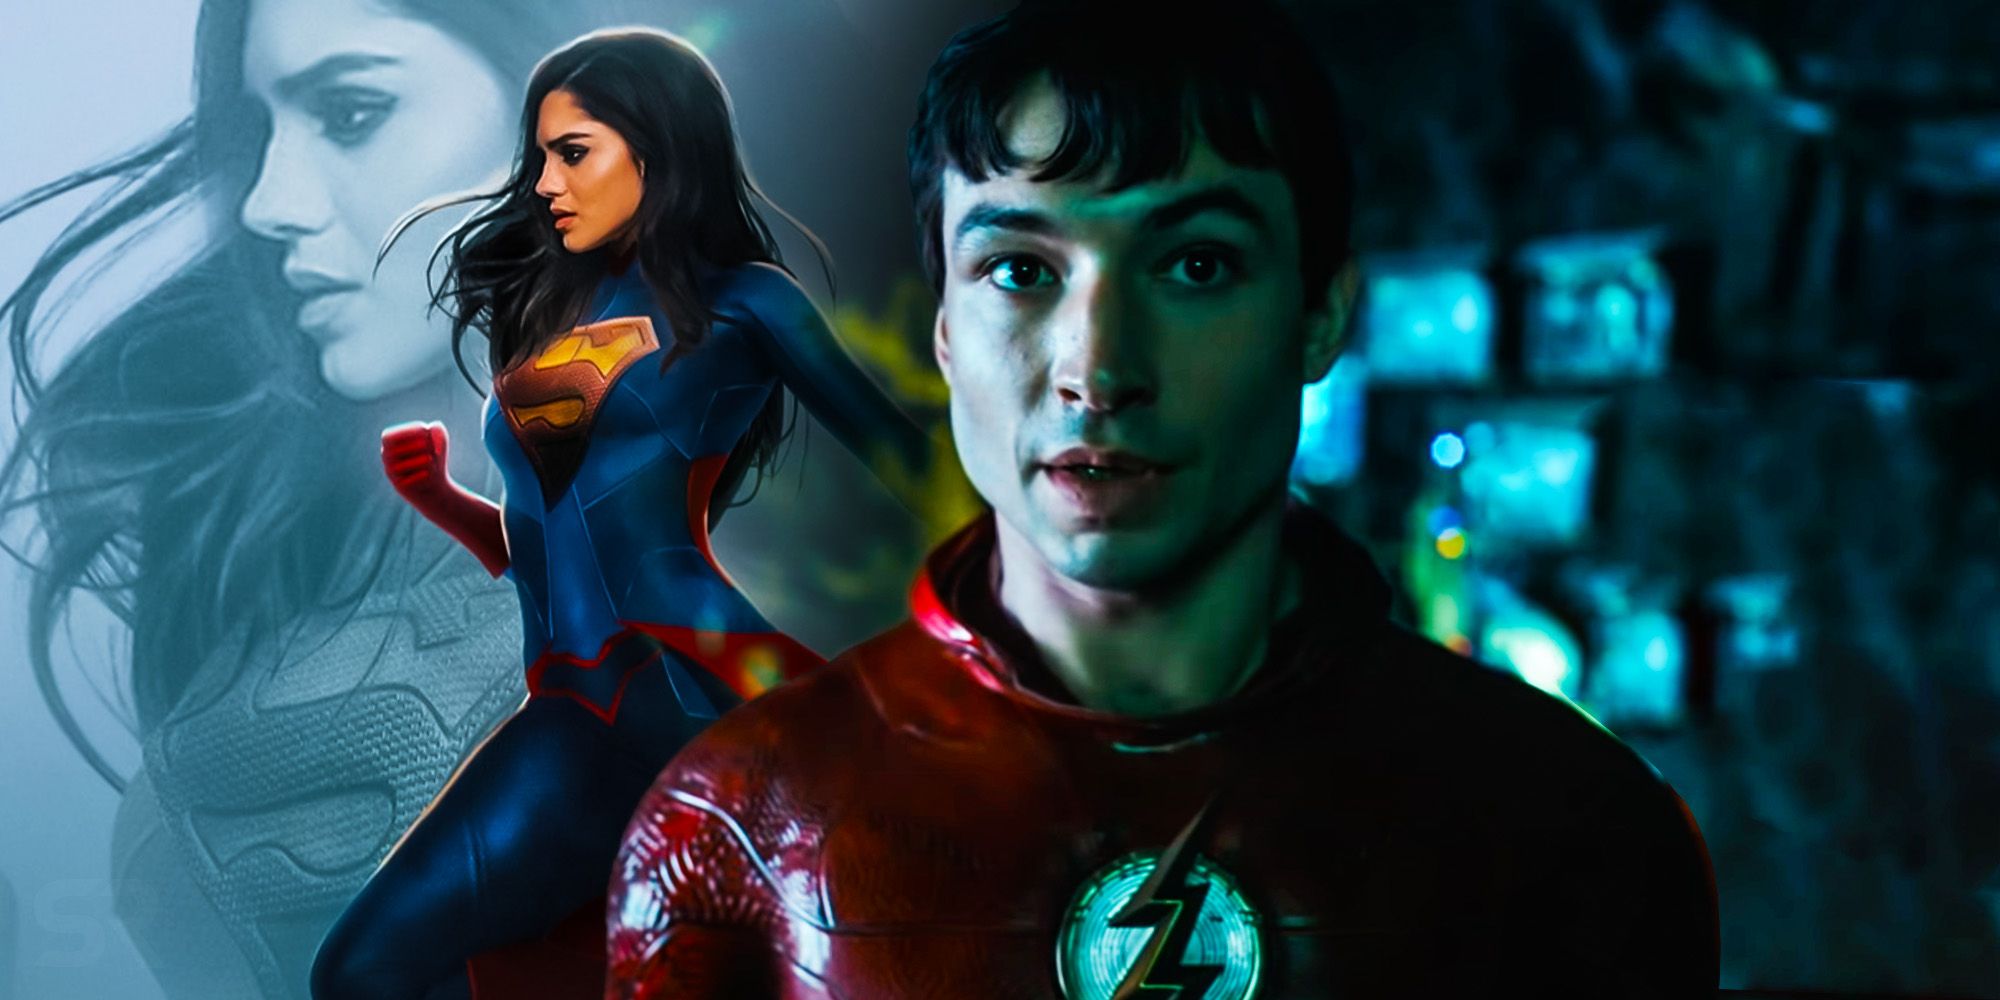 The Flash Movie corre el riesgo de desperdiciar la historia de origen más interesante de Supergirl